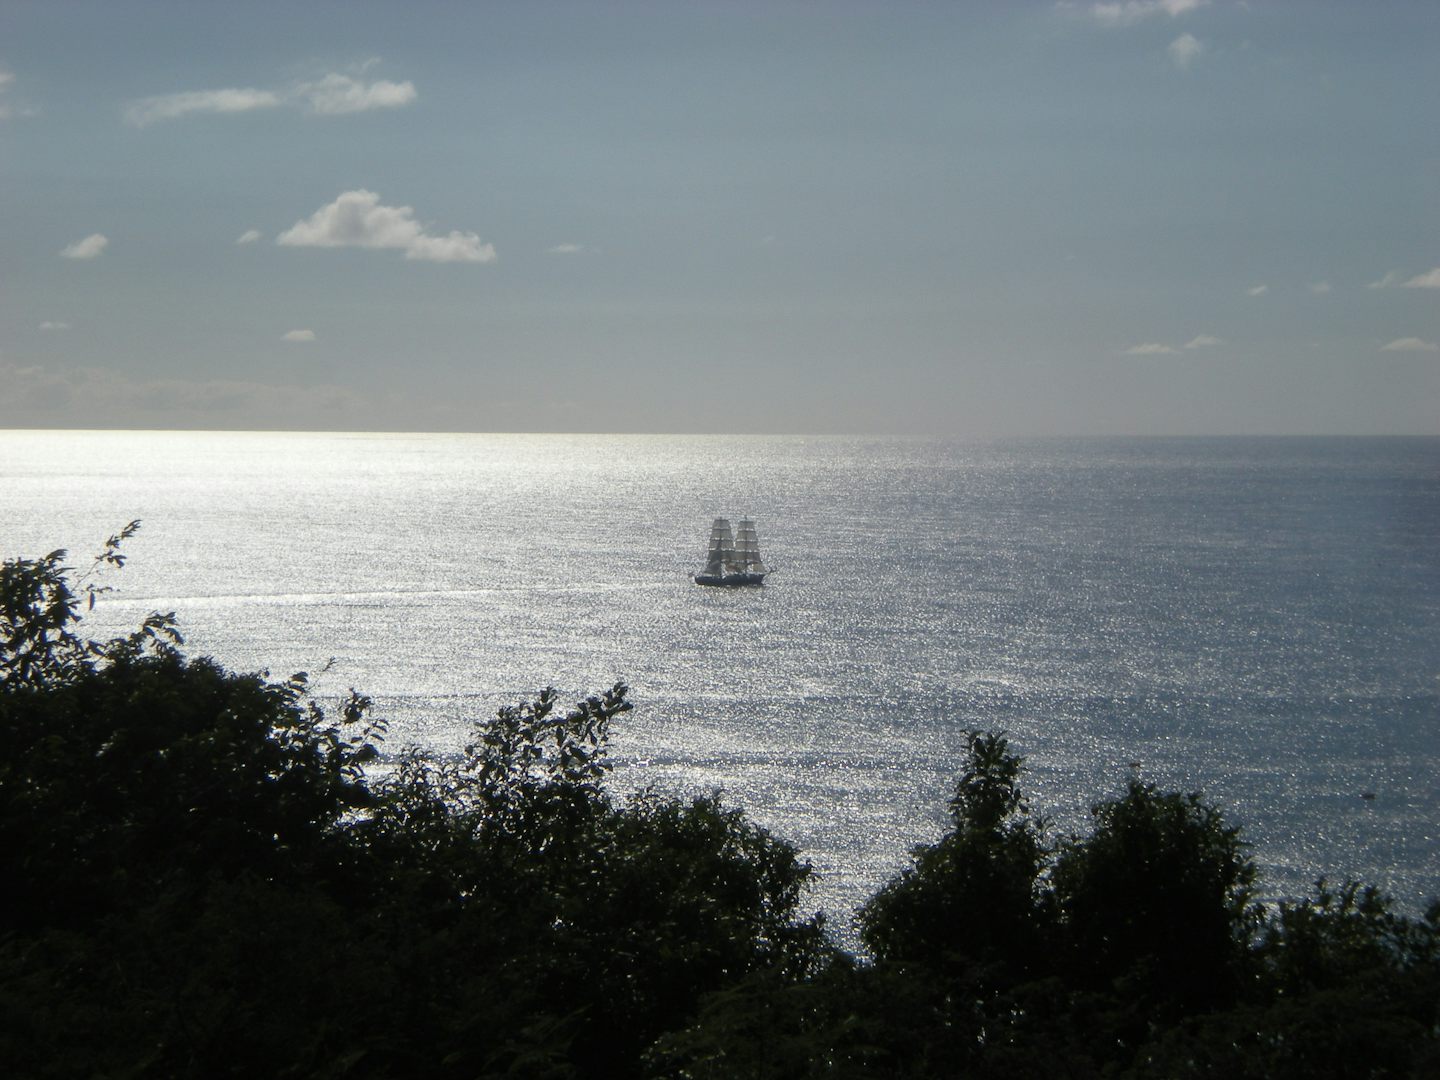 Sailing vessel is St. Maarten